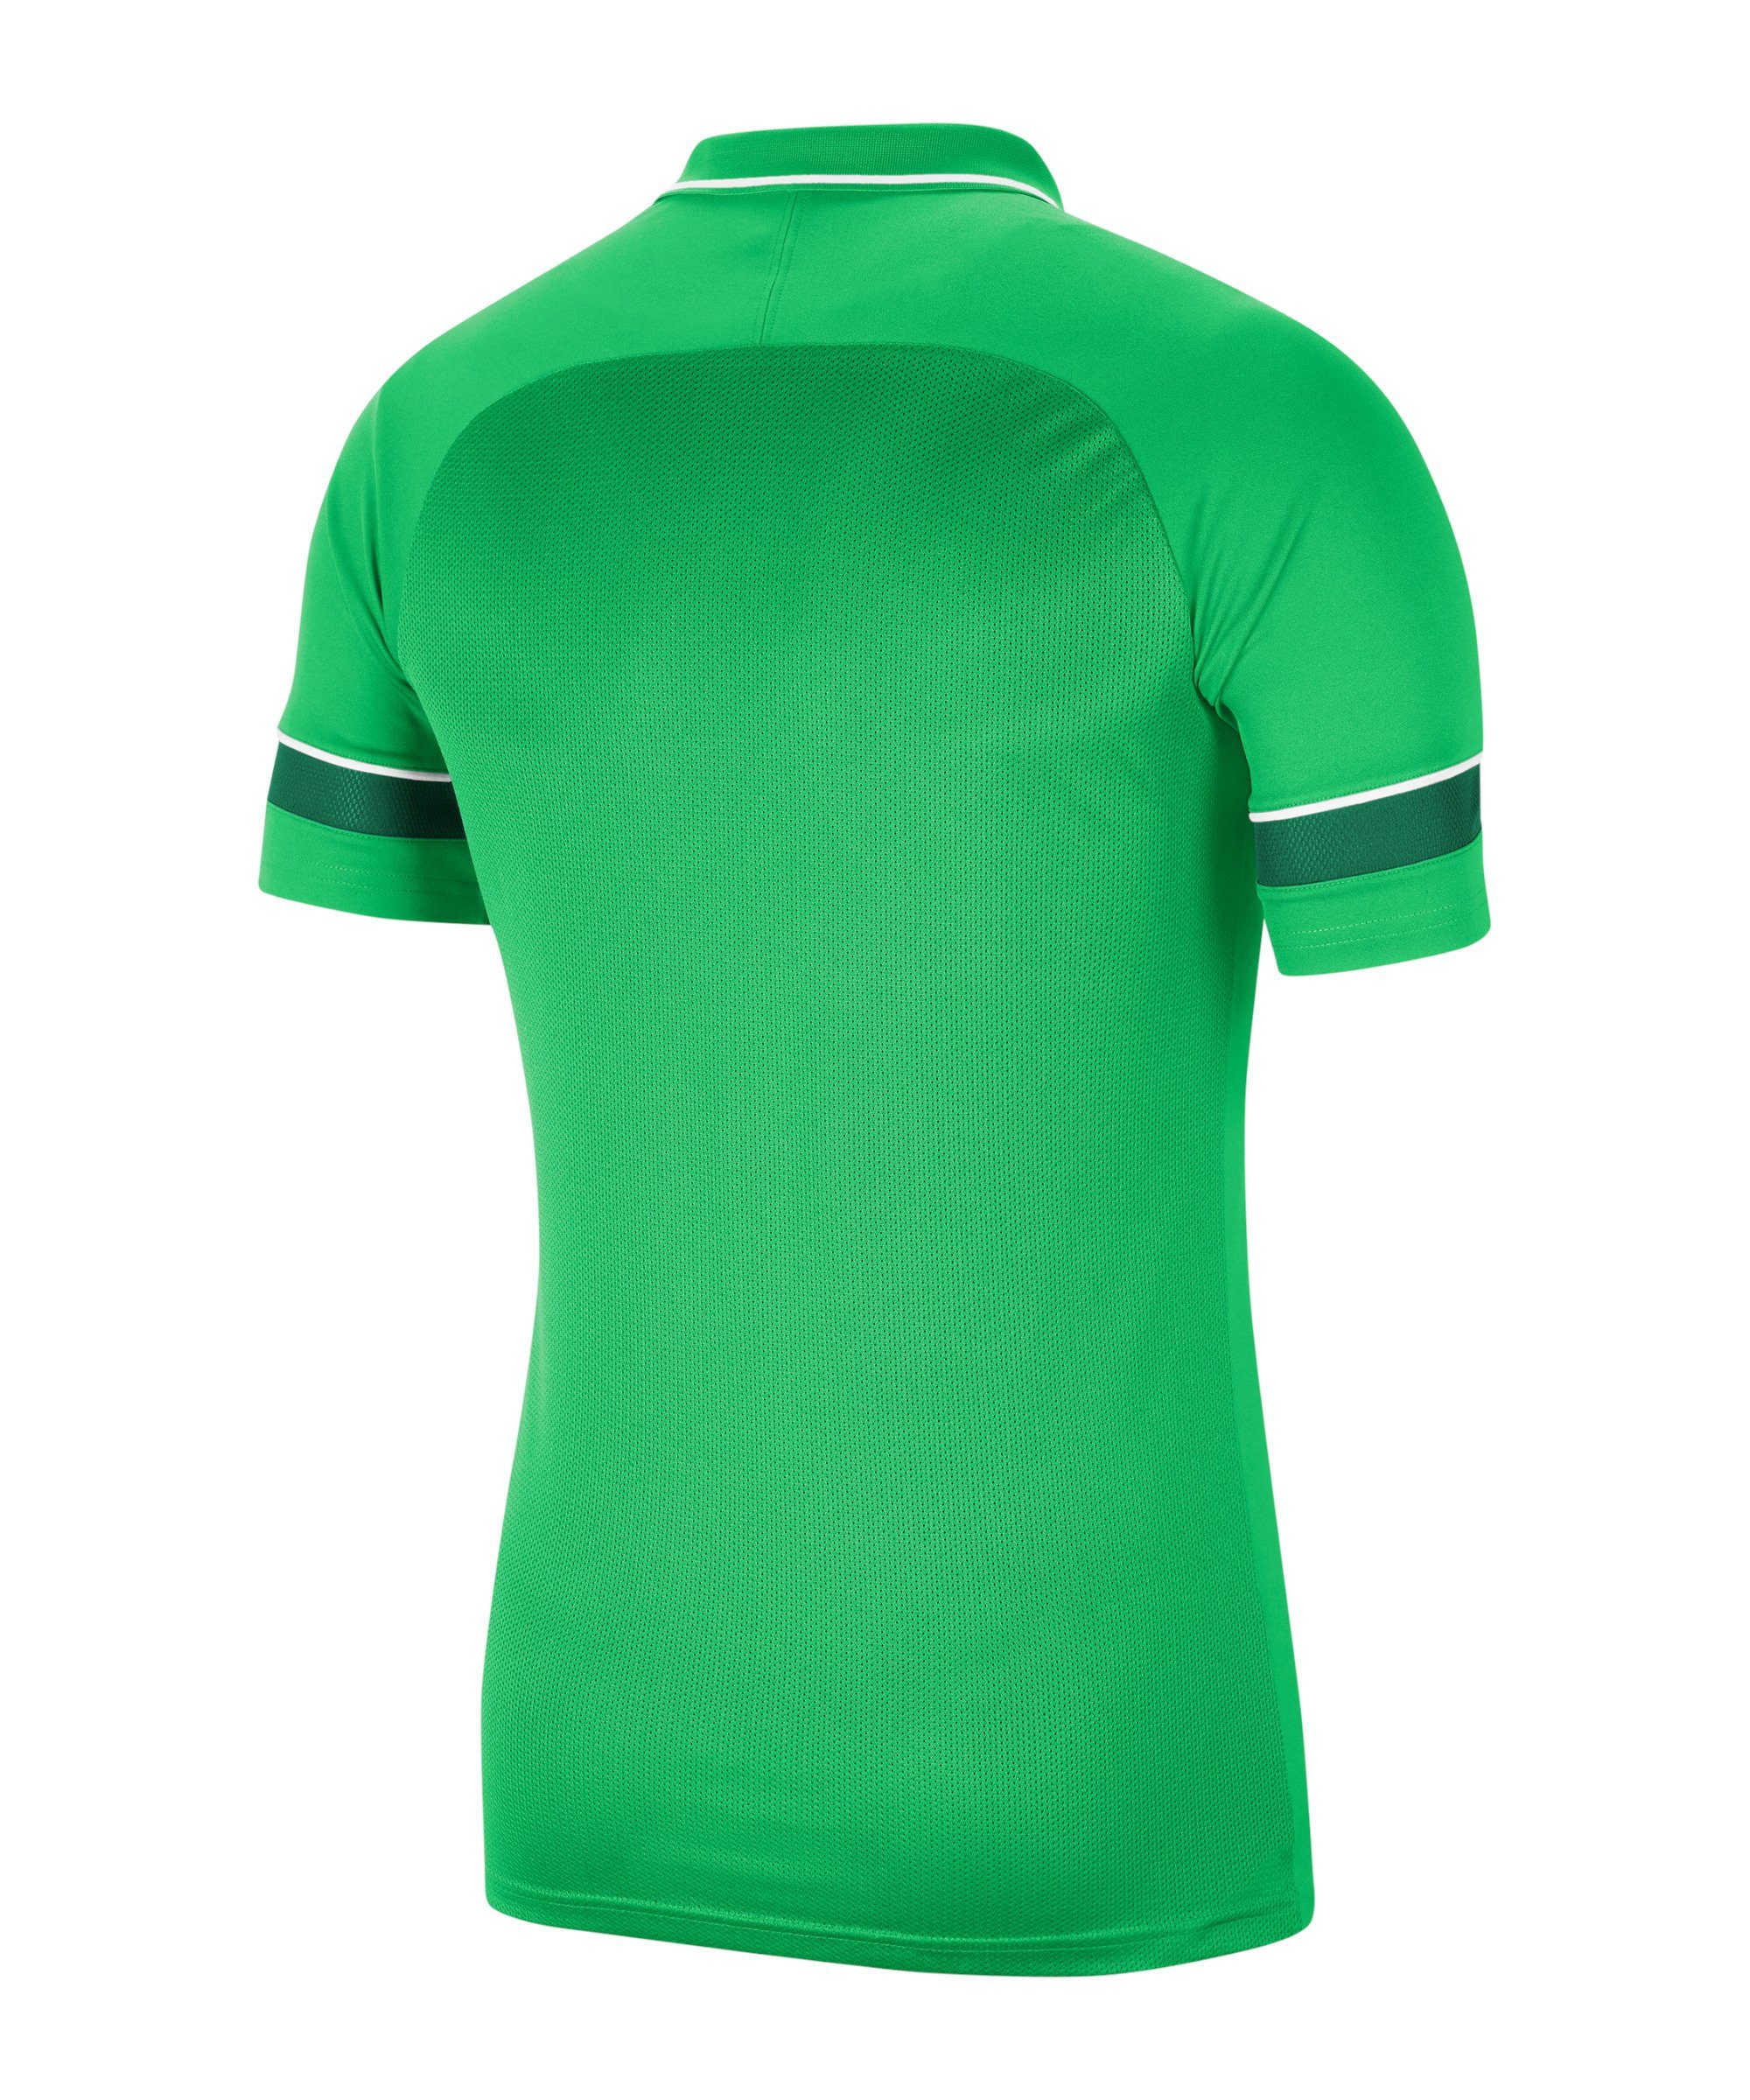 Poloshirt T-Shirt gruenweiss 21 default Academy Nike